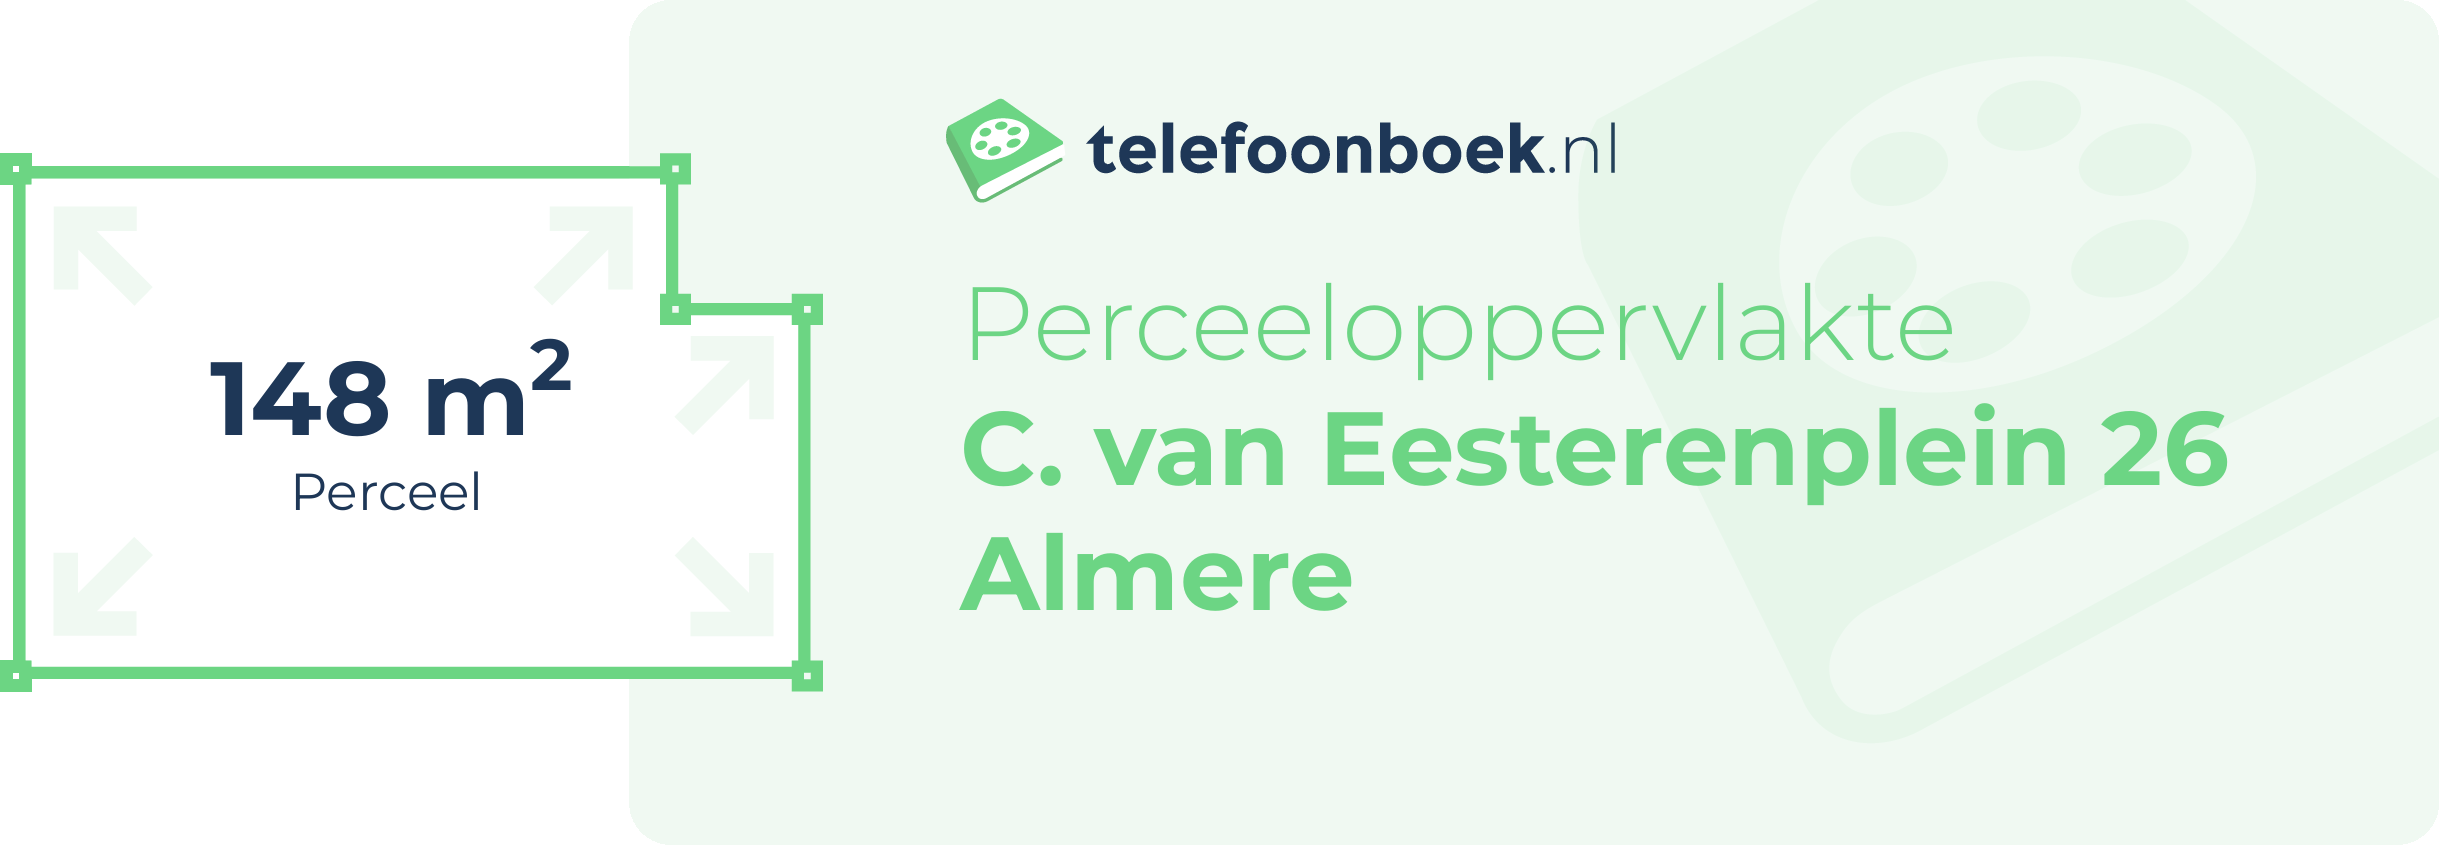 Perceeloppervlakte C. Van Eesterenplein 26 Almere